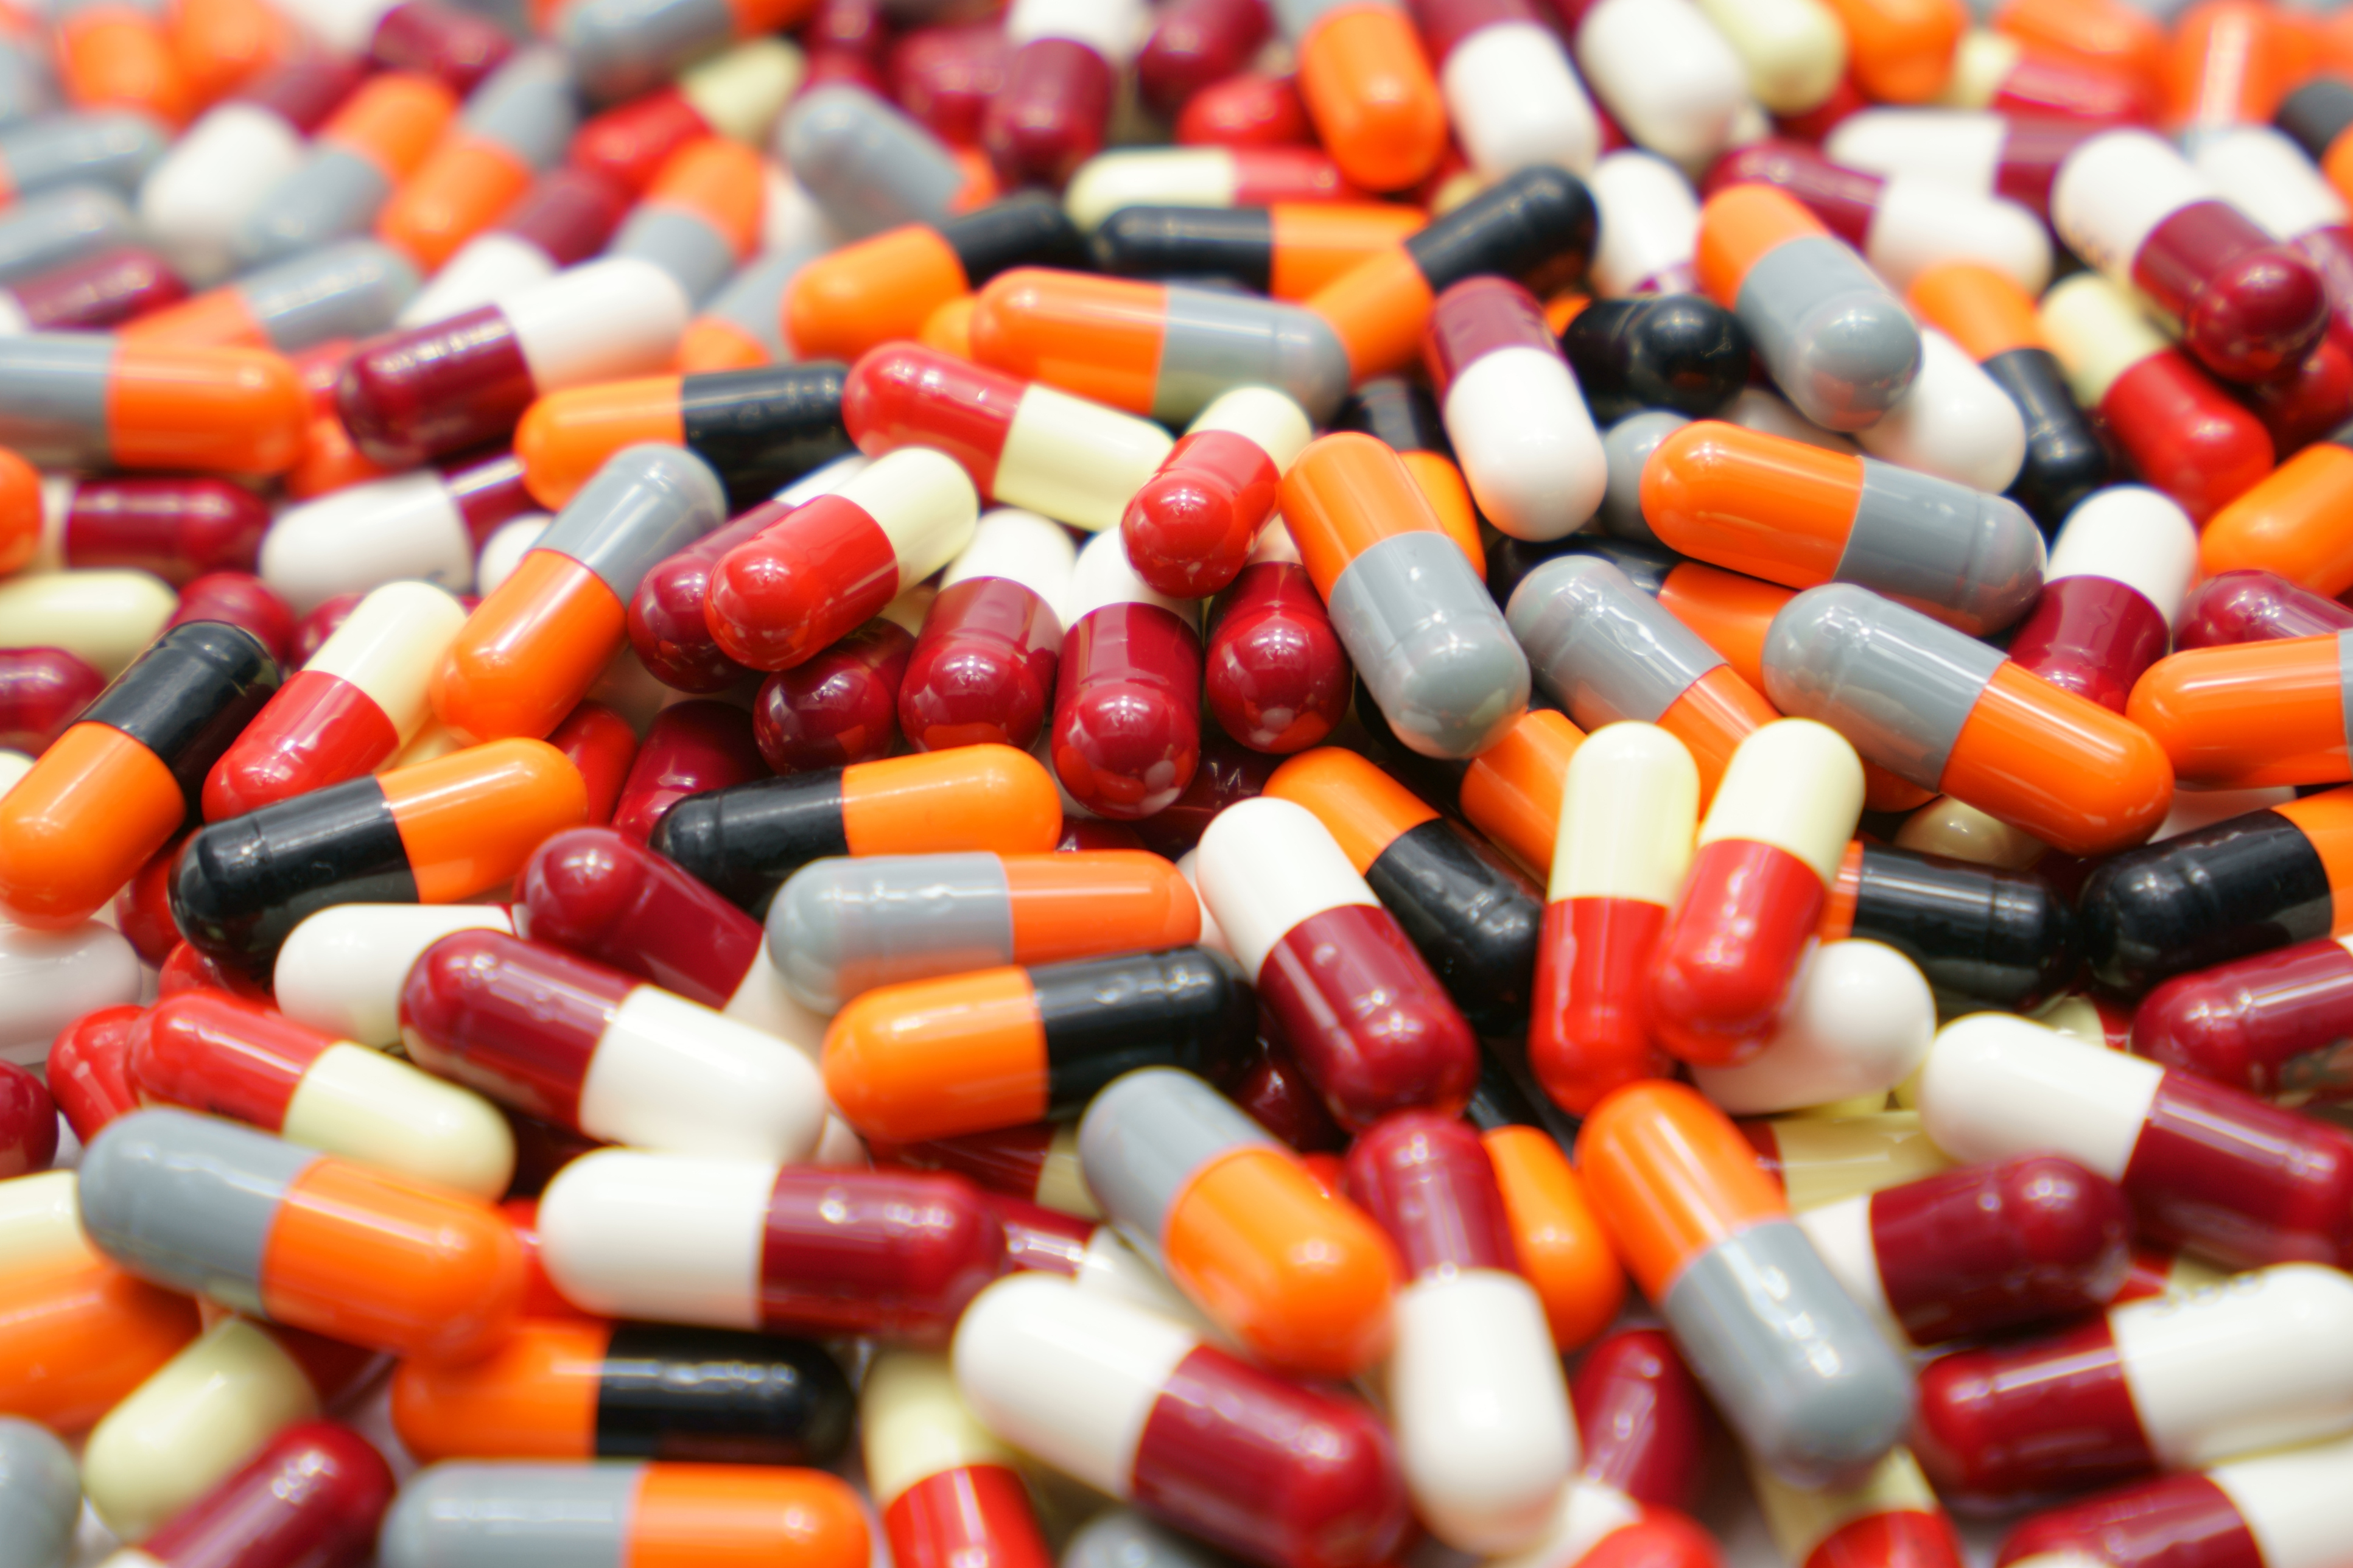 New antibiotics needed: WHO priority pathogens of concern